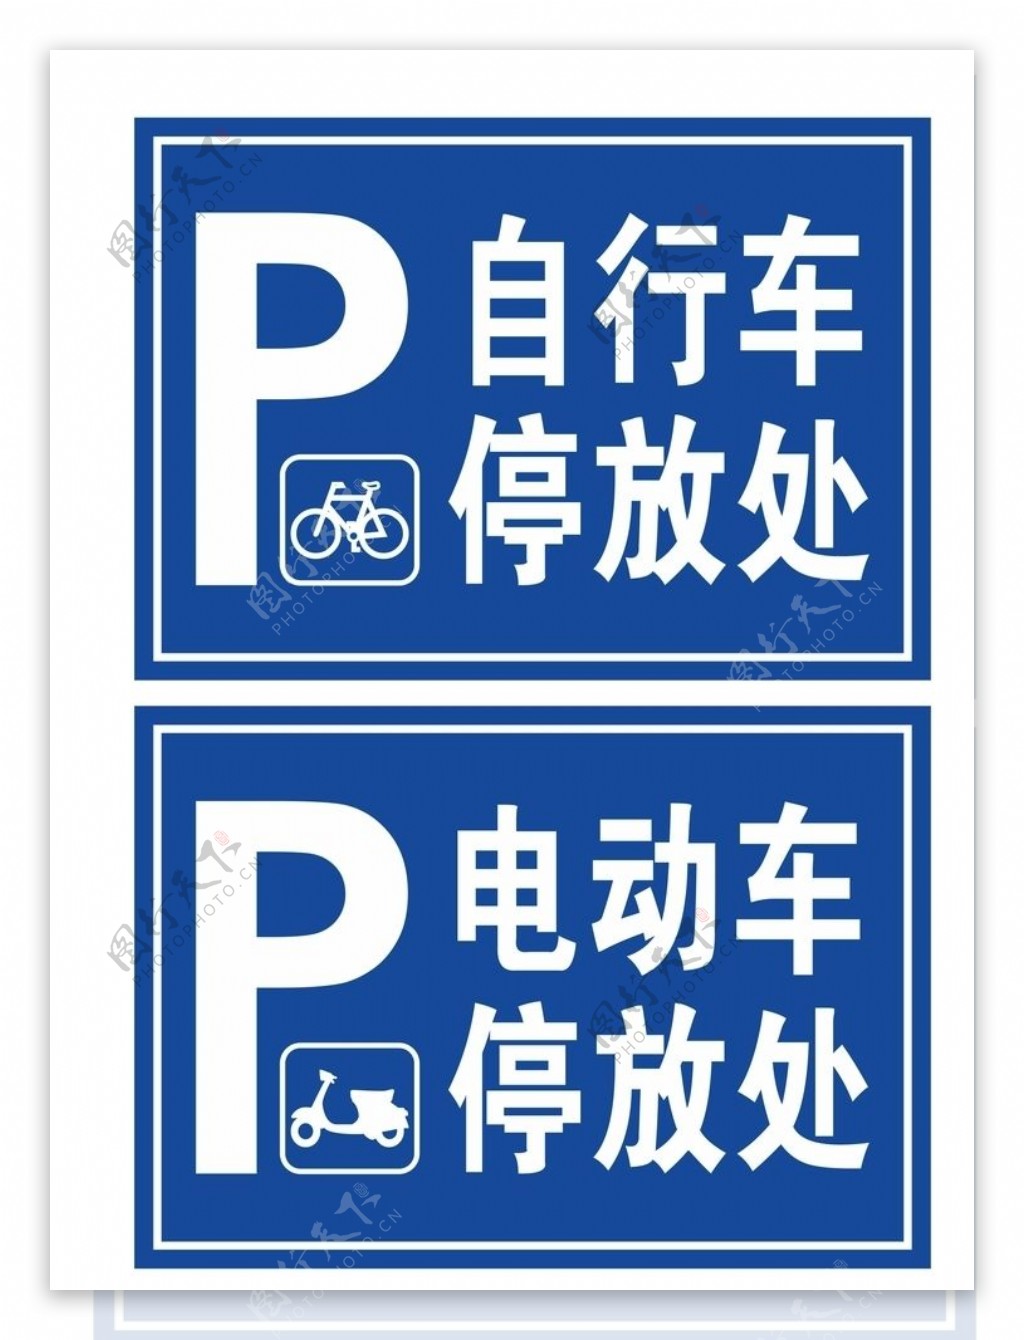 自行车停放处